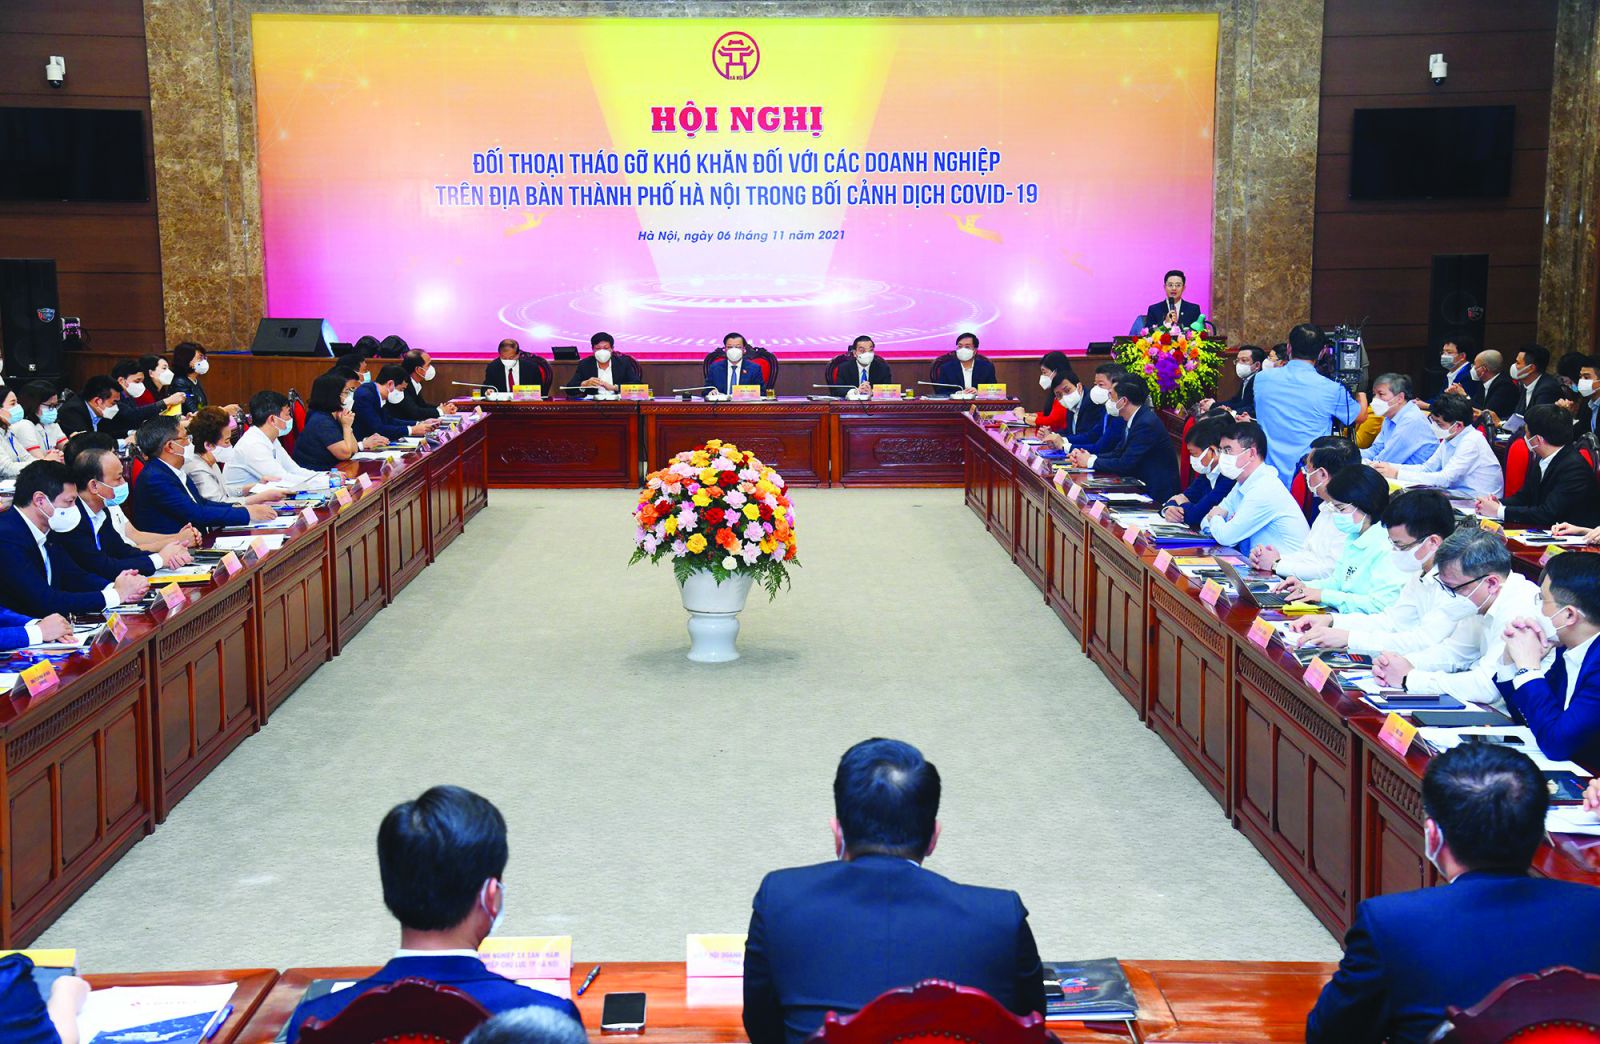  Hội nghị “Đối thoại tháo gỡ khó khăn đối với các doanh nghiệp trên địa bàn TP Hà Nội trong bối cảnh dịch Covid-19” 